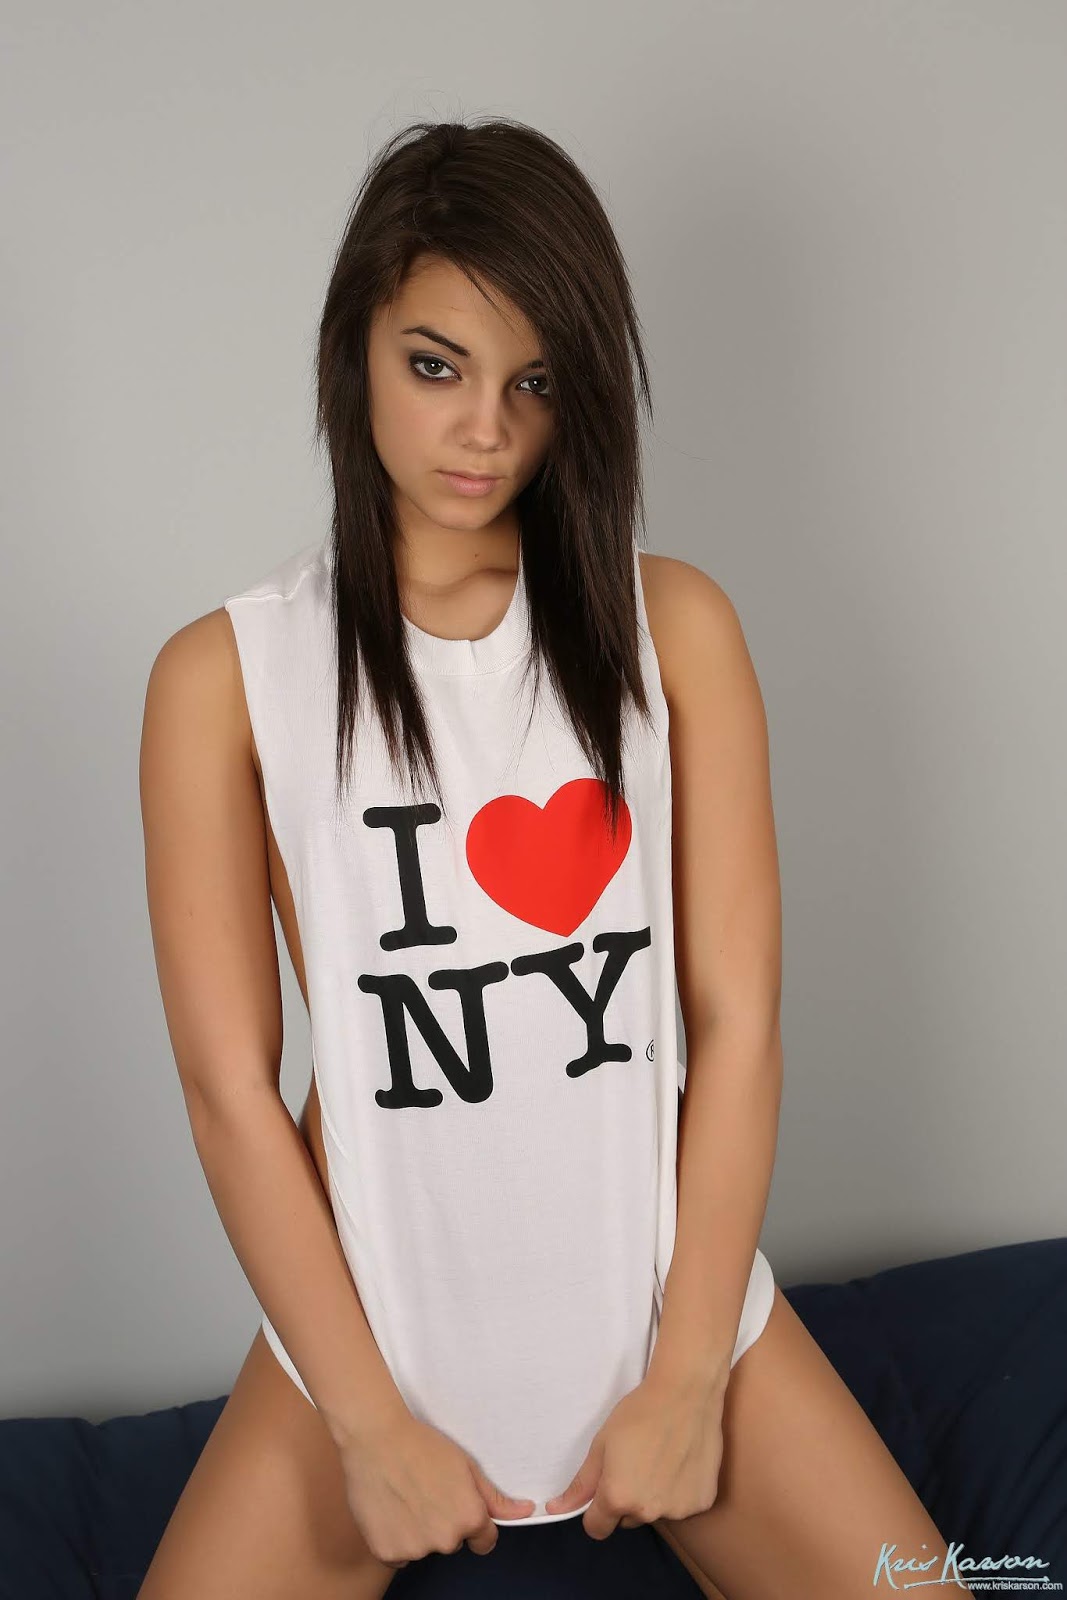 KrisKarson.004 - I Love NY (2013.06.12) .